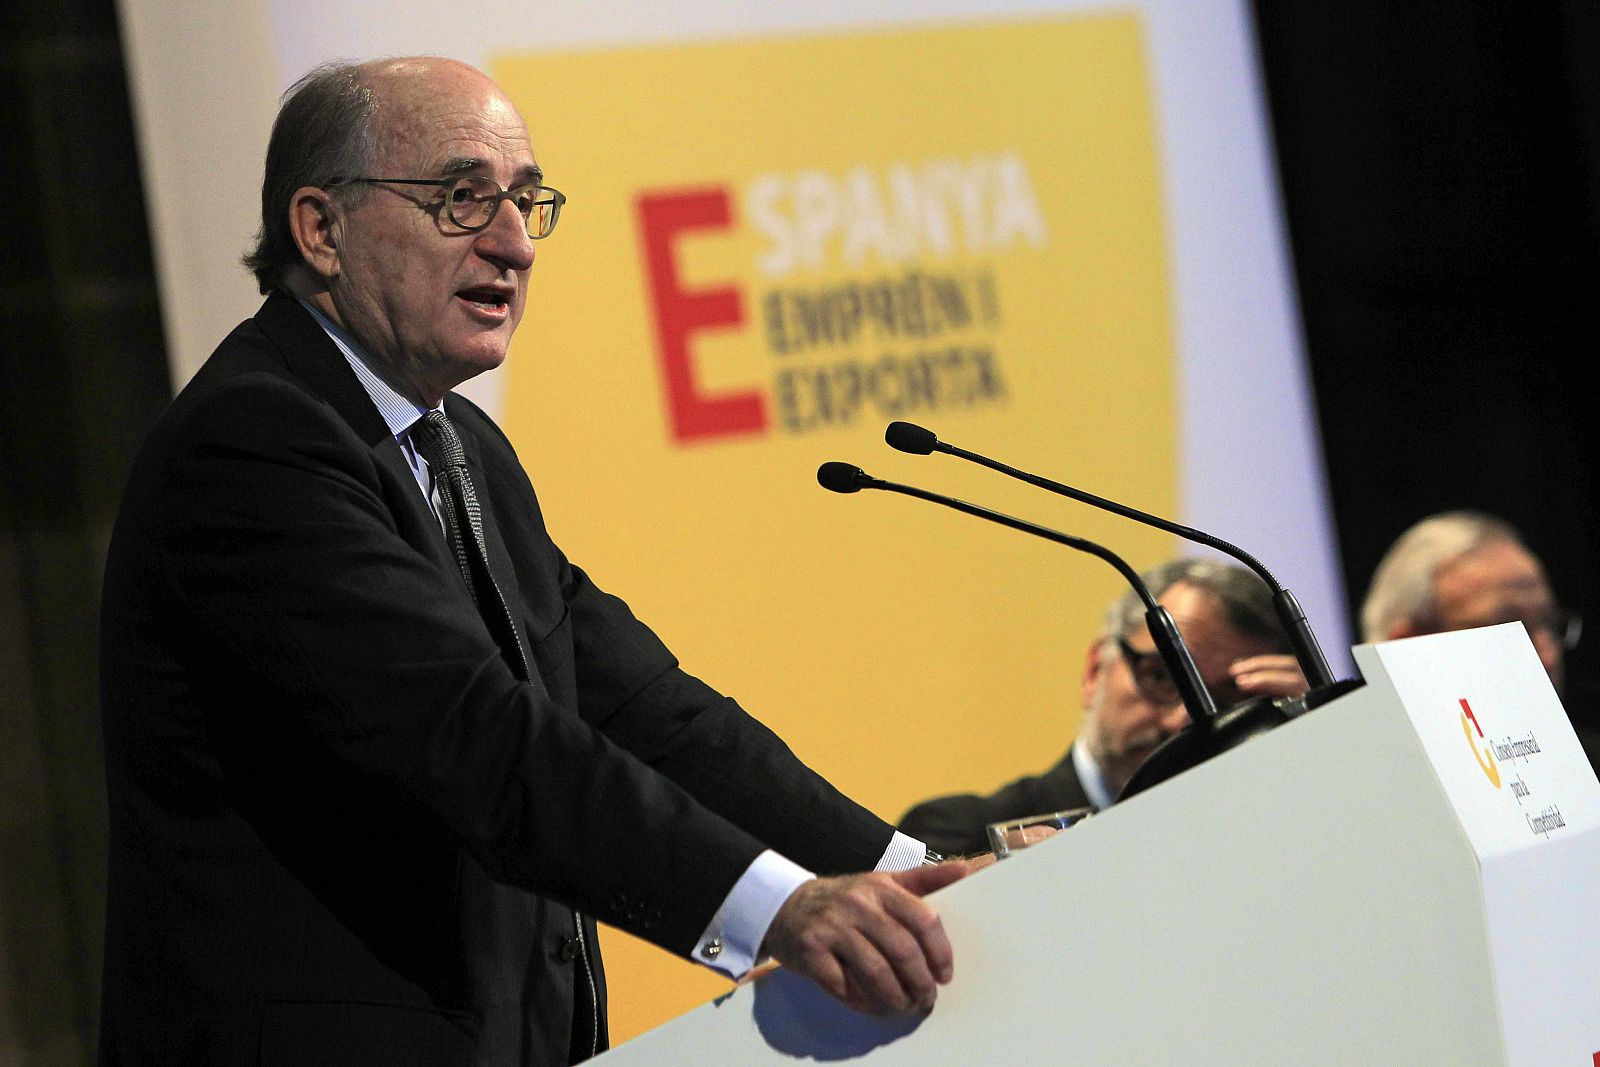 El presidente de Repsol, Antonio Brufau, durante su intervención en la conferencia organizada por el Consejo Empresarial para la Competitividad bajo el título "España emprende y exporta"